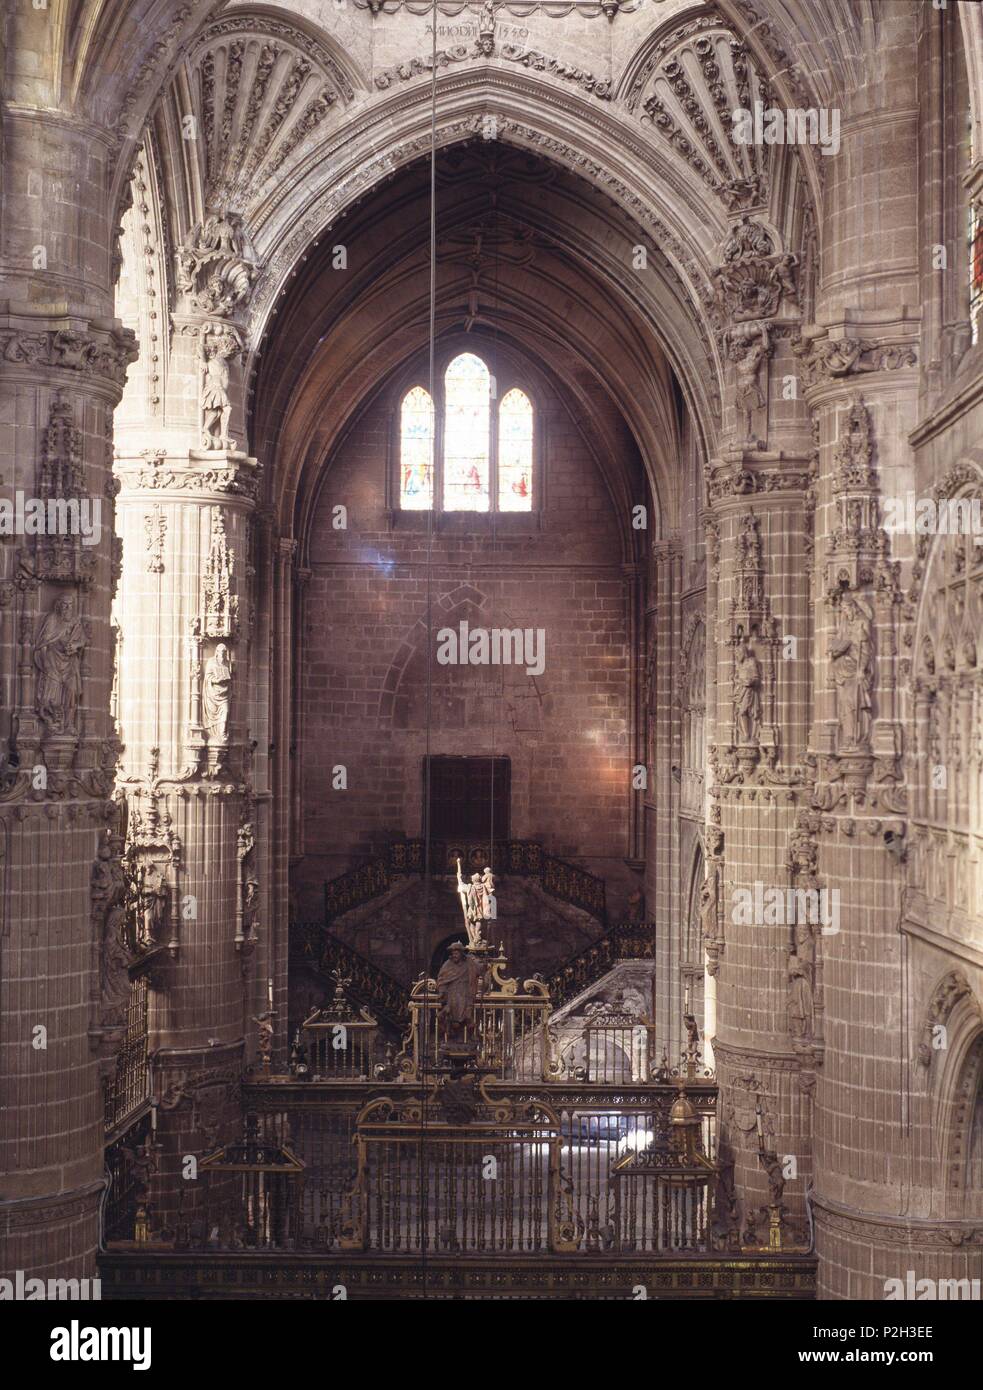 Catedral de Burgos, iniciada el año 1221 y finalizada en el s.XVI. Vista interior de la nave. Stock Photo